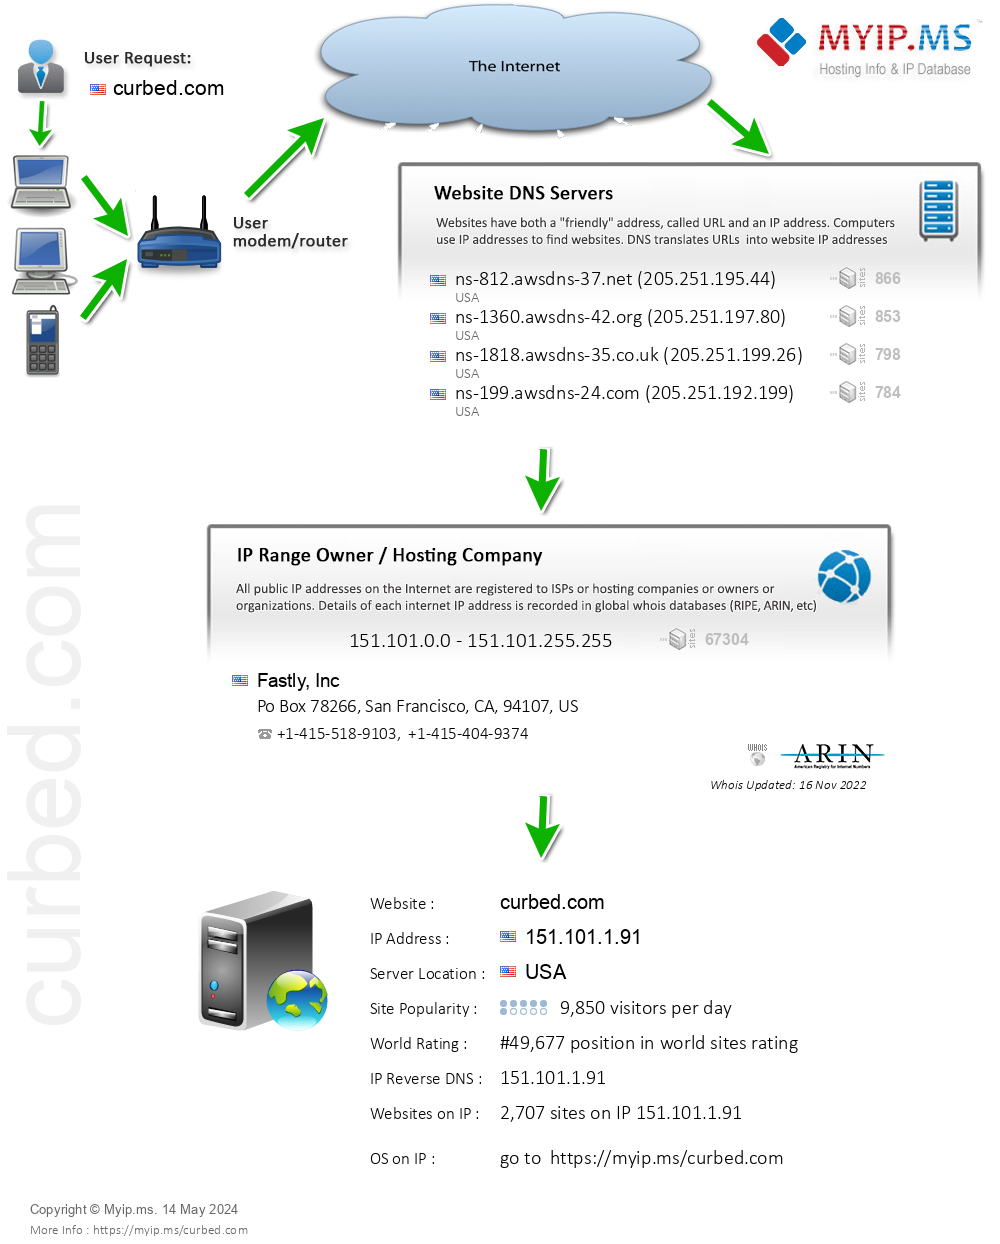 Curbed.com - Website Hosting Visual IP Diagram